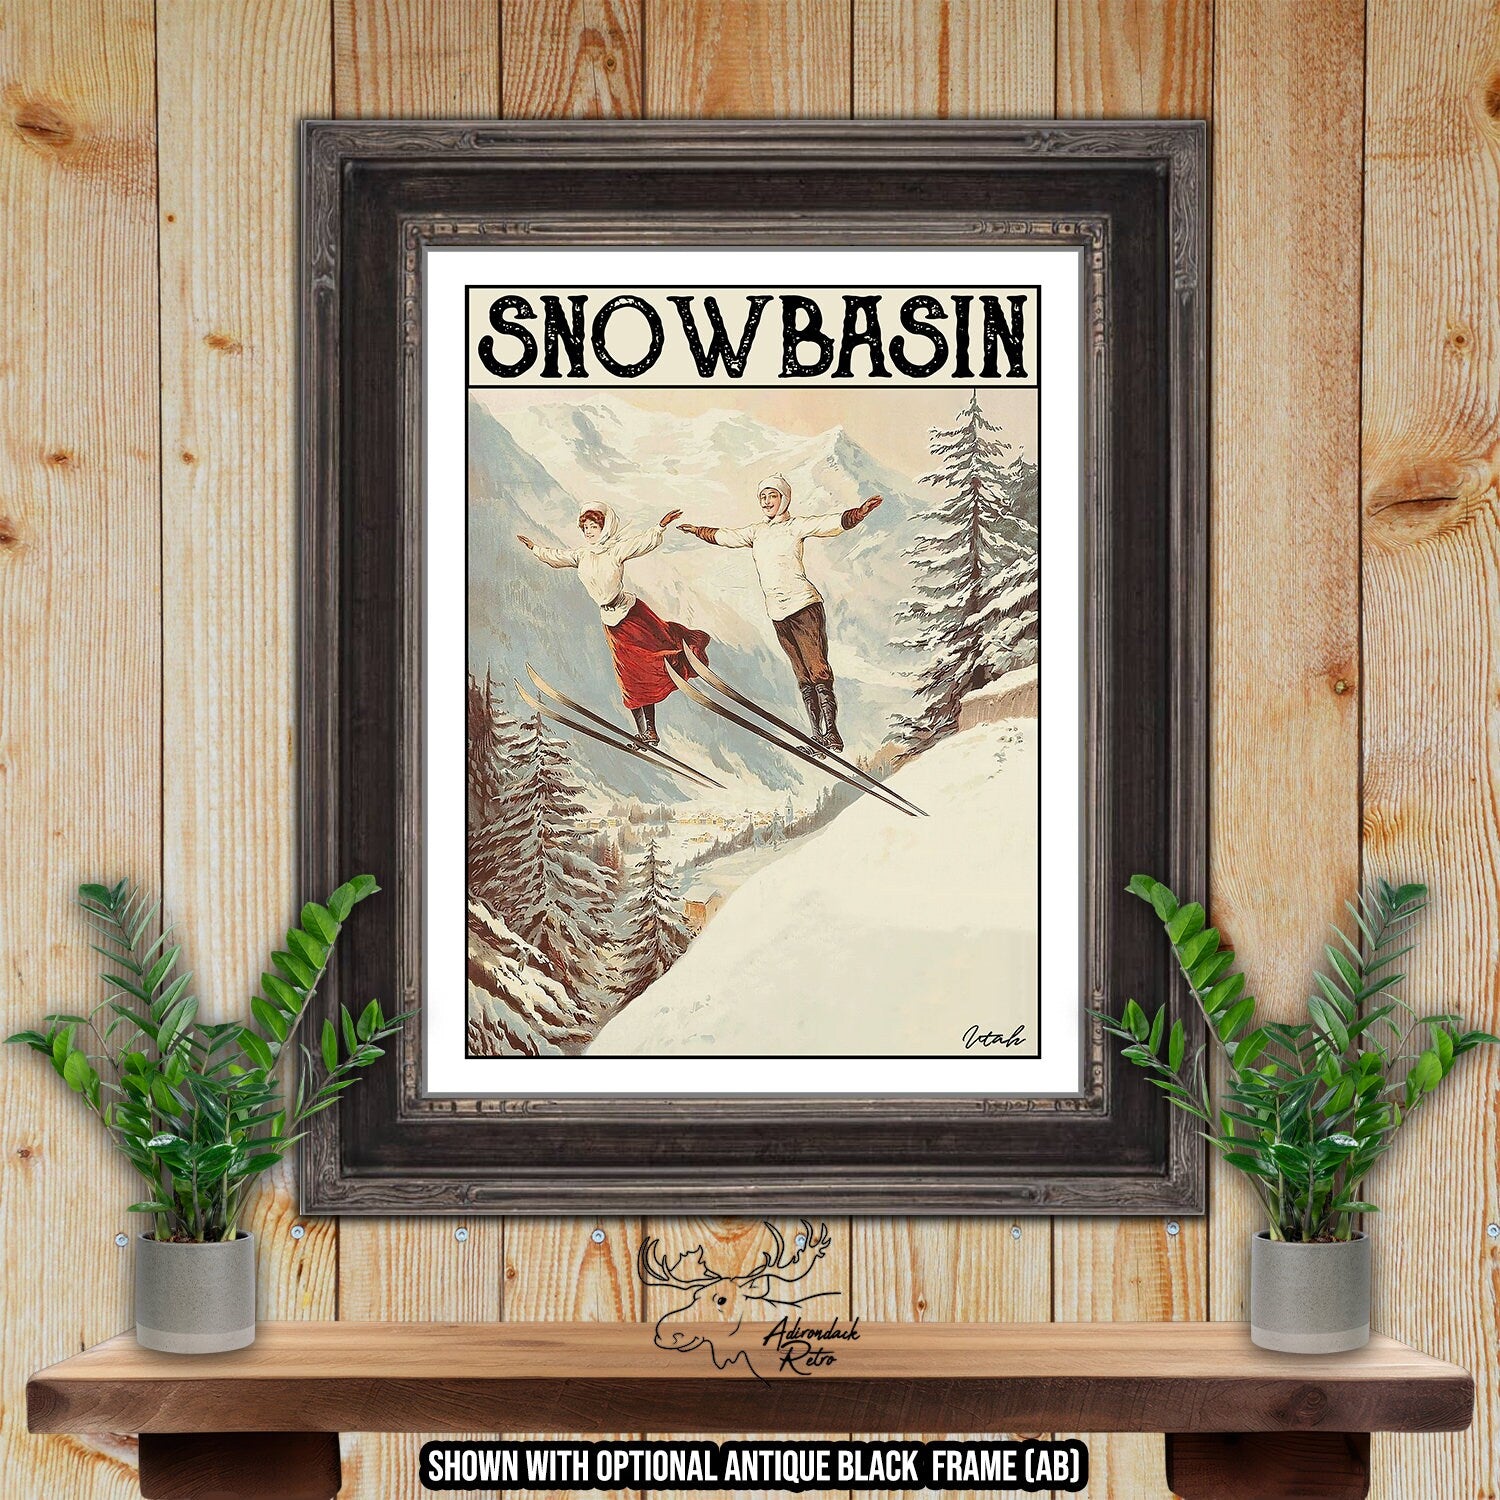 Snowbasin Utah Retro Ski Resort Art Print at Adirondack Retro